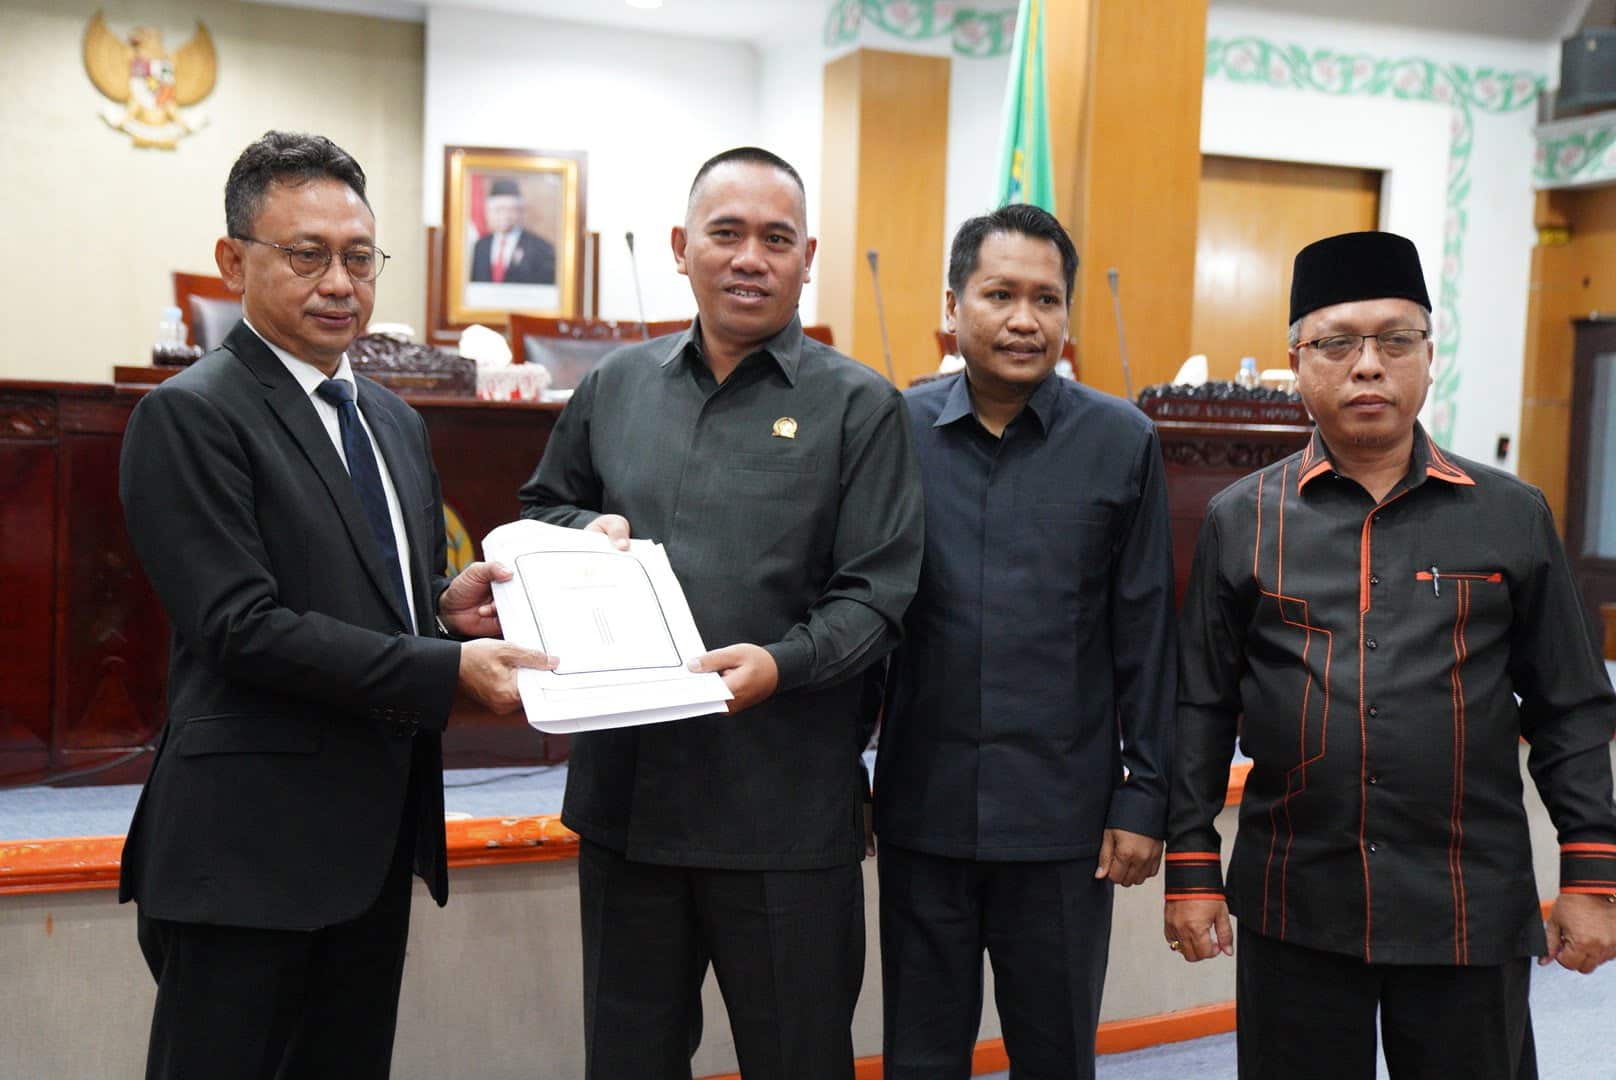 Wali Kota Pontianak, Edi Rusdi Kamtono menyerahkan usulan empat raperda kepada Ketua DPRD Kota Pontianak, Satarudin. (Foto: Prokopim For KalbarOnline.com)